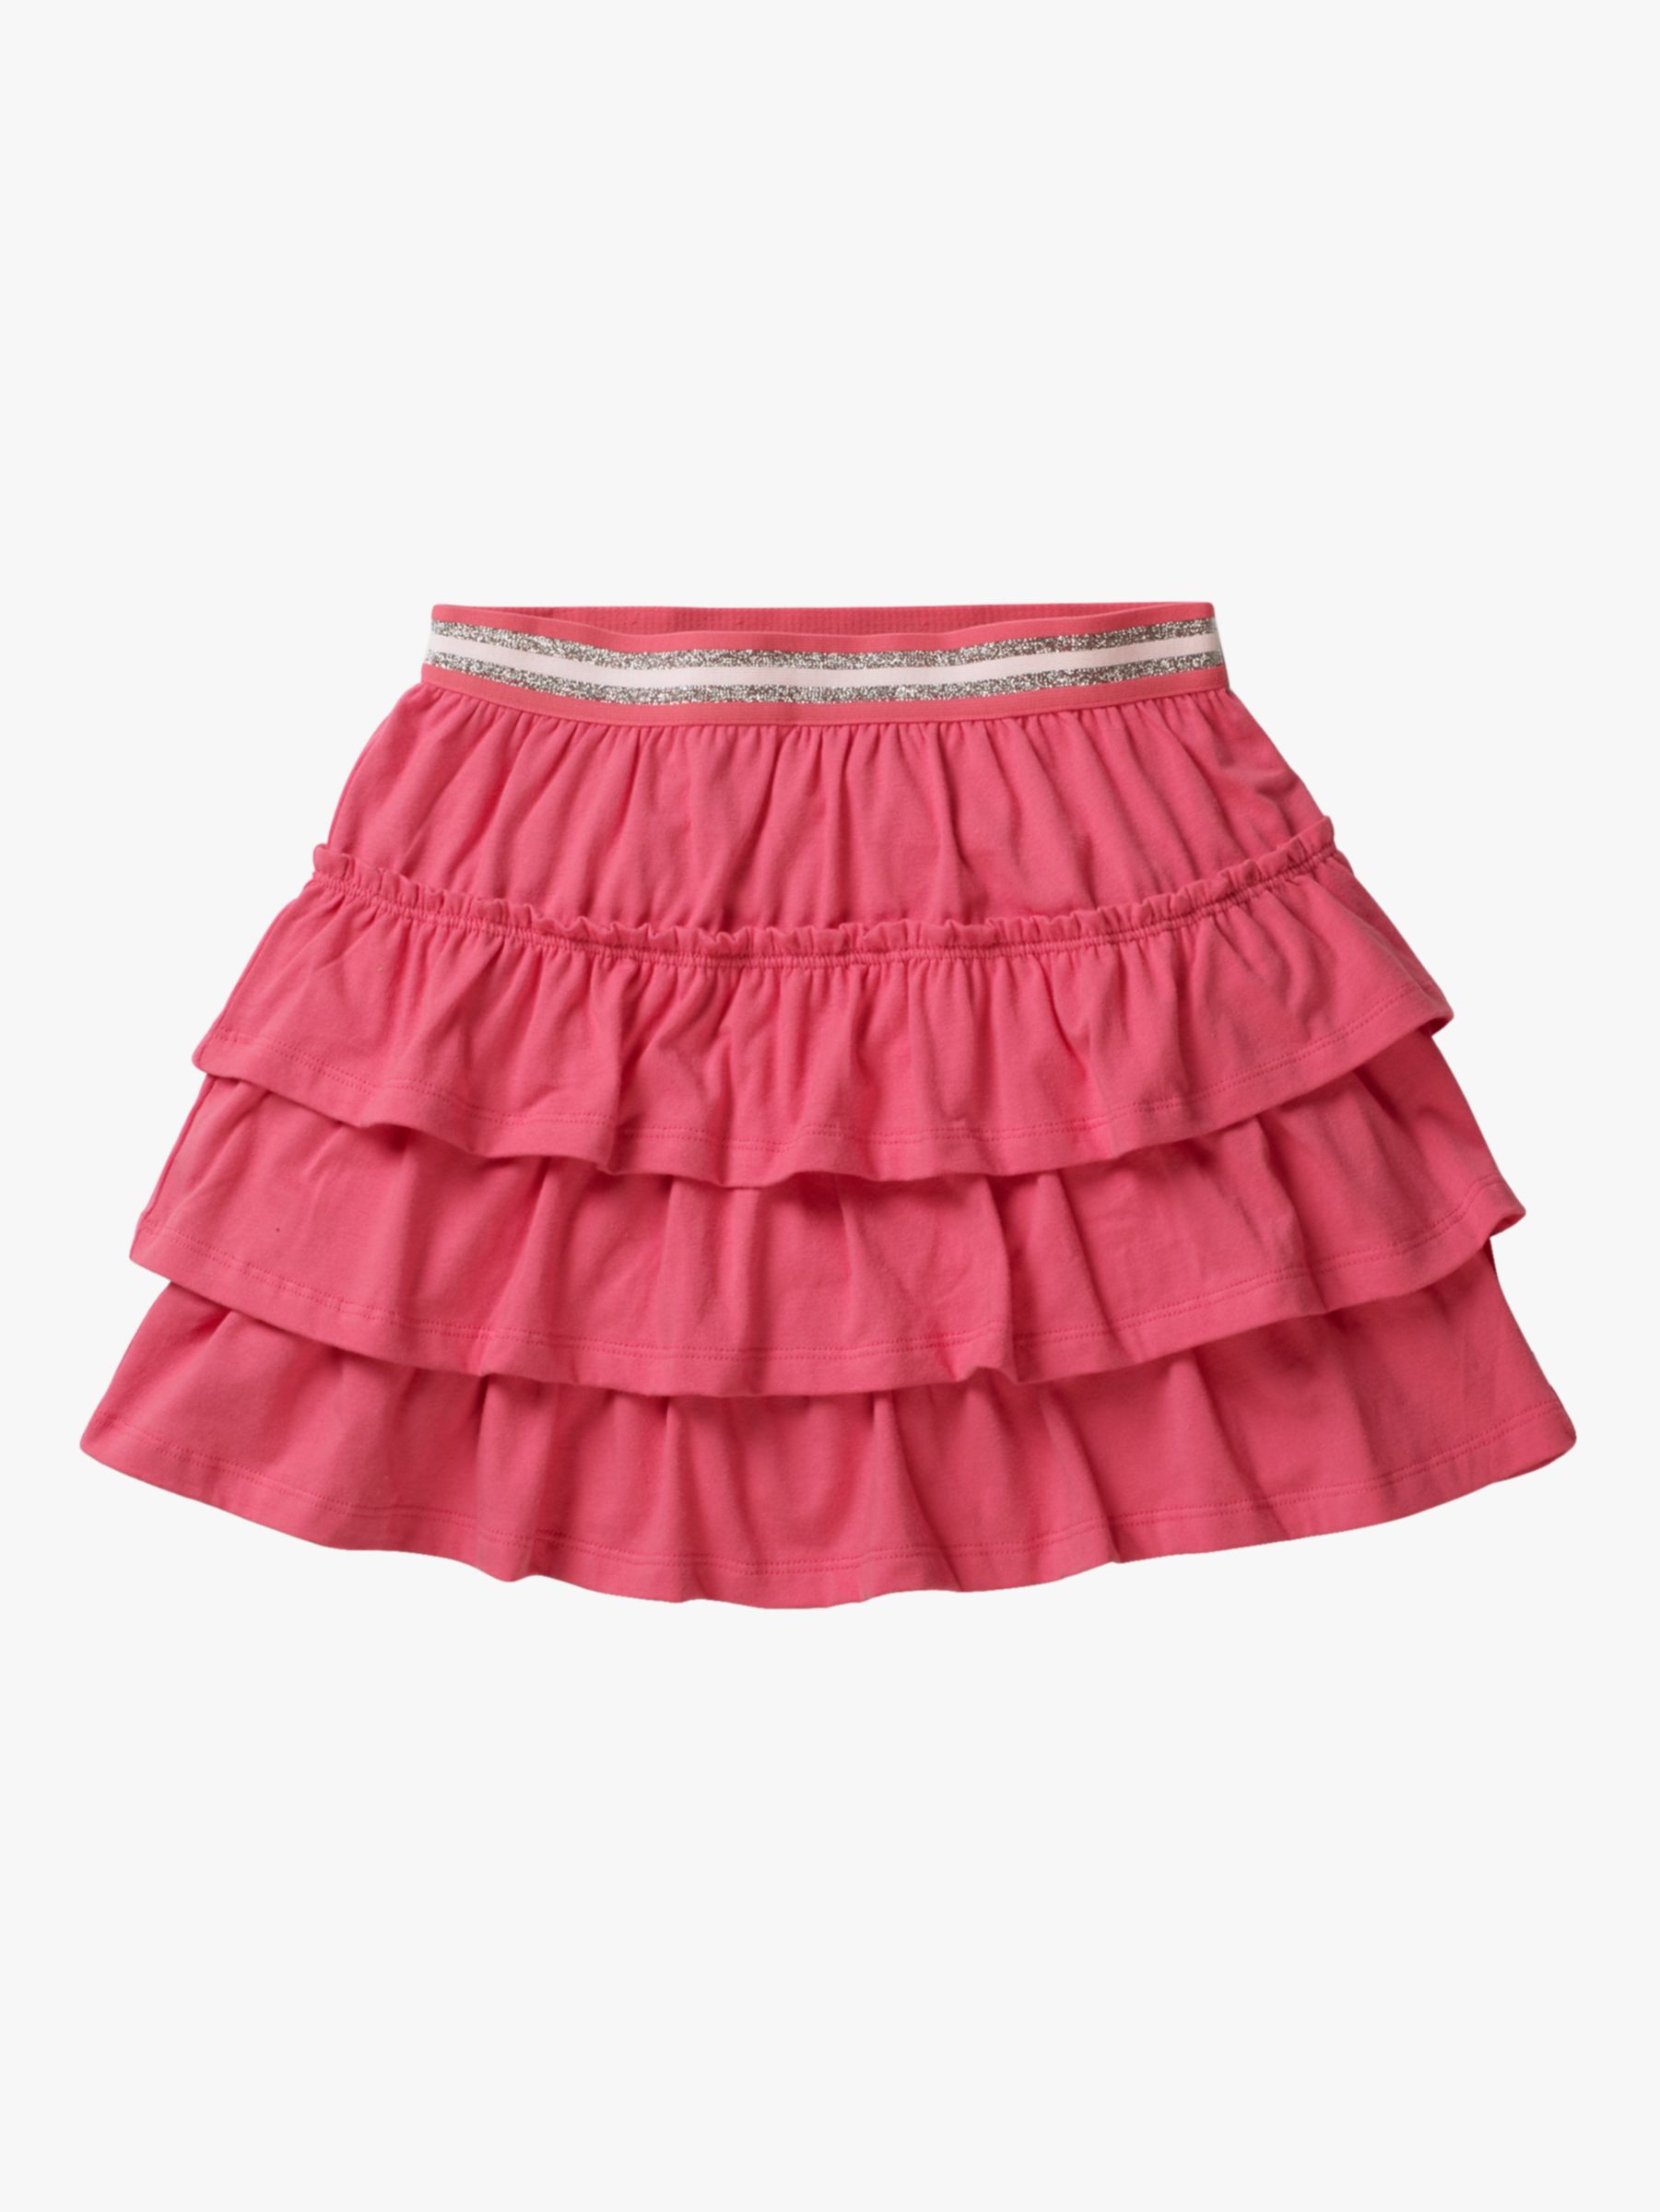 Mini Boden Girls' Jersey Ruffle Skort, Pink